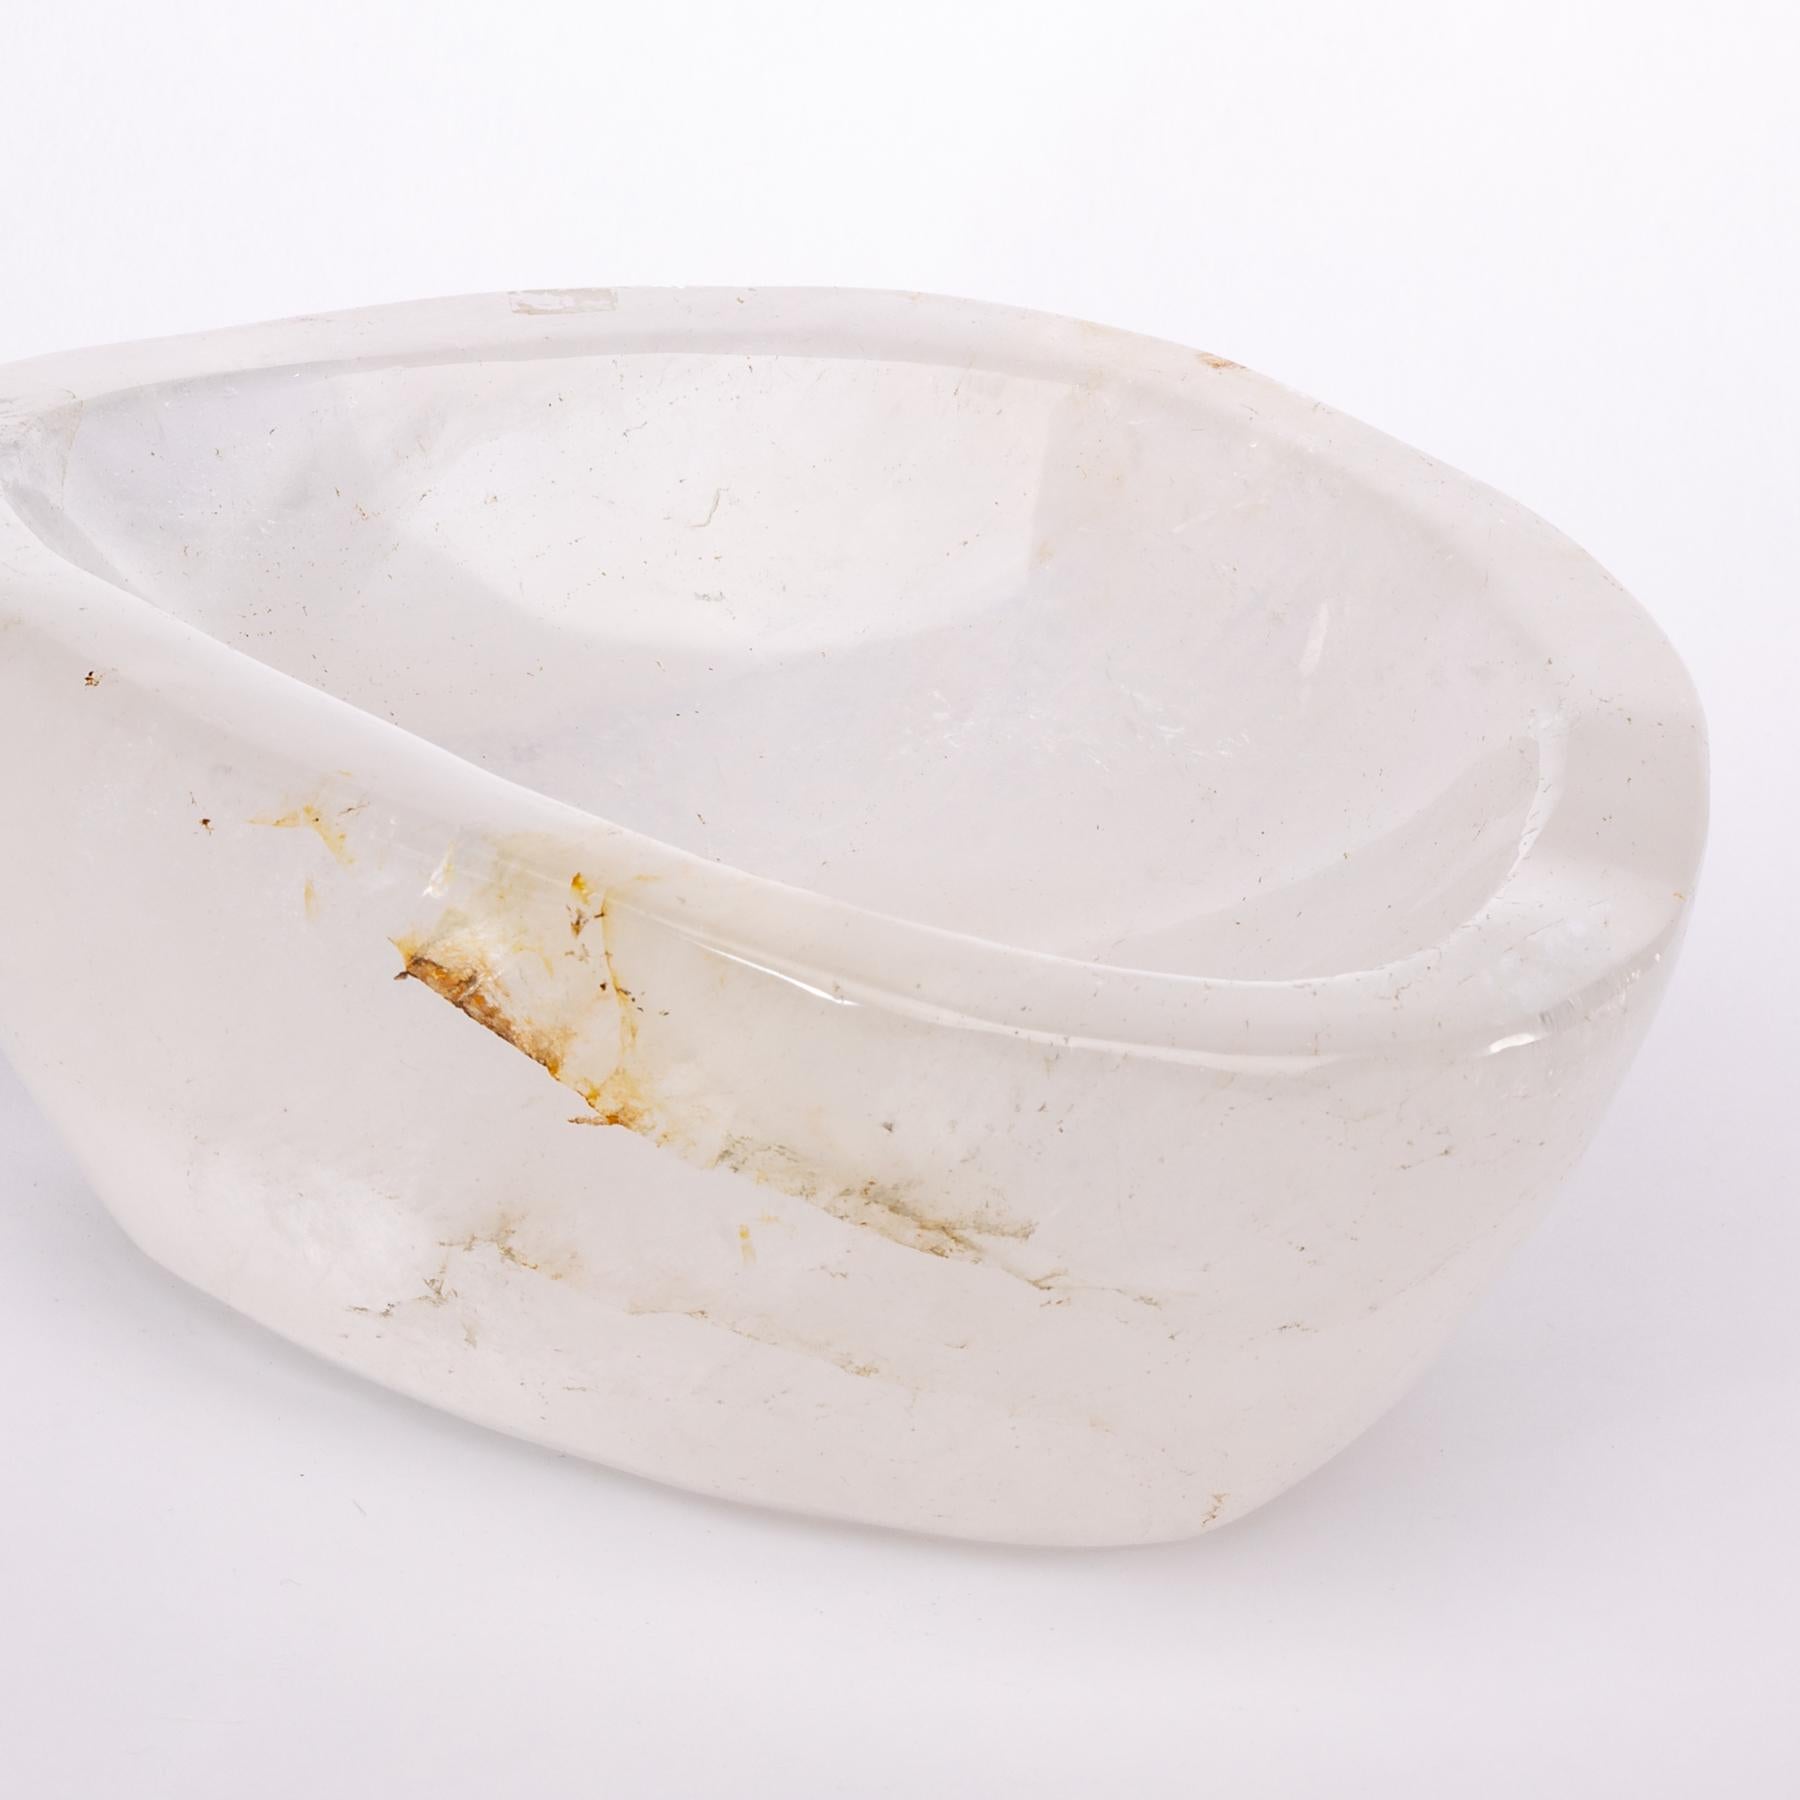 Polished Clear Quartz Bowl from Madagascar